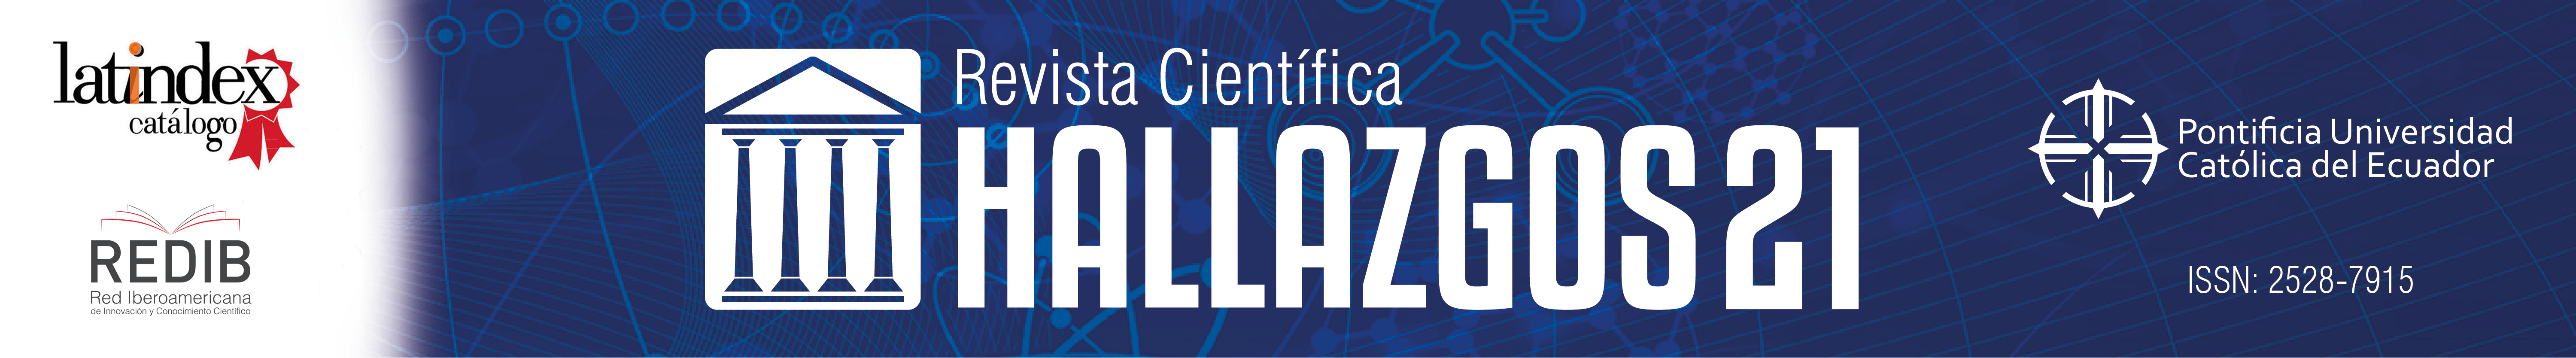 Hallazgos Logo - Revista Científica Hallazgos21